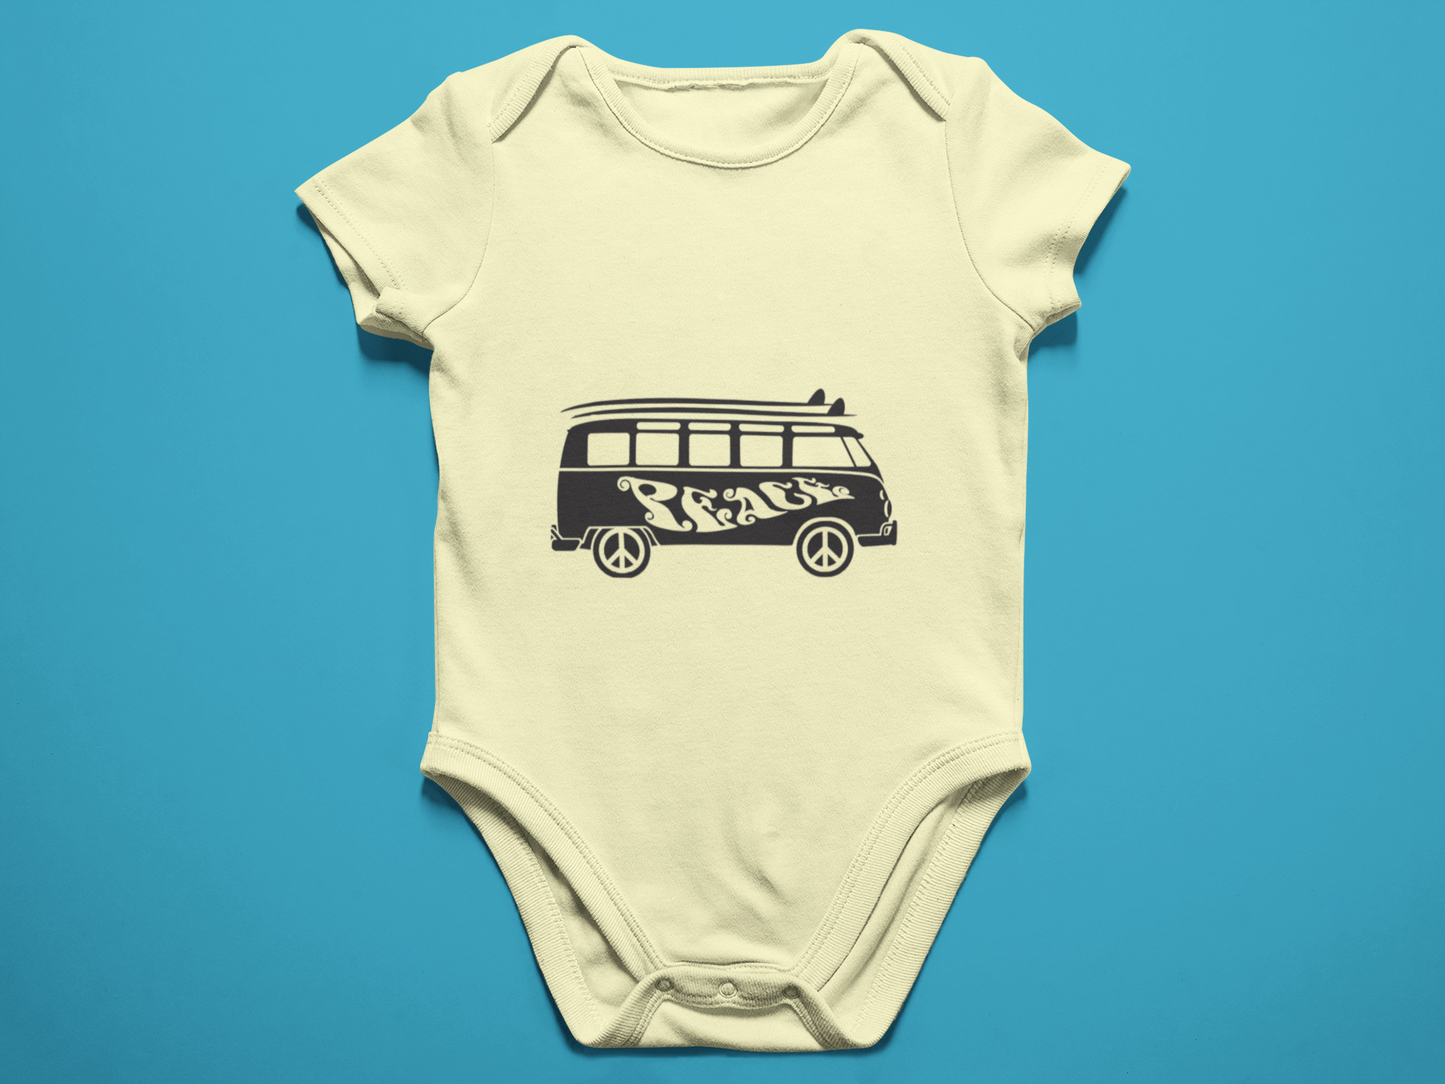 VW Peace Bus Surfer Baby Onesie